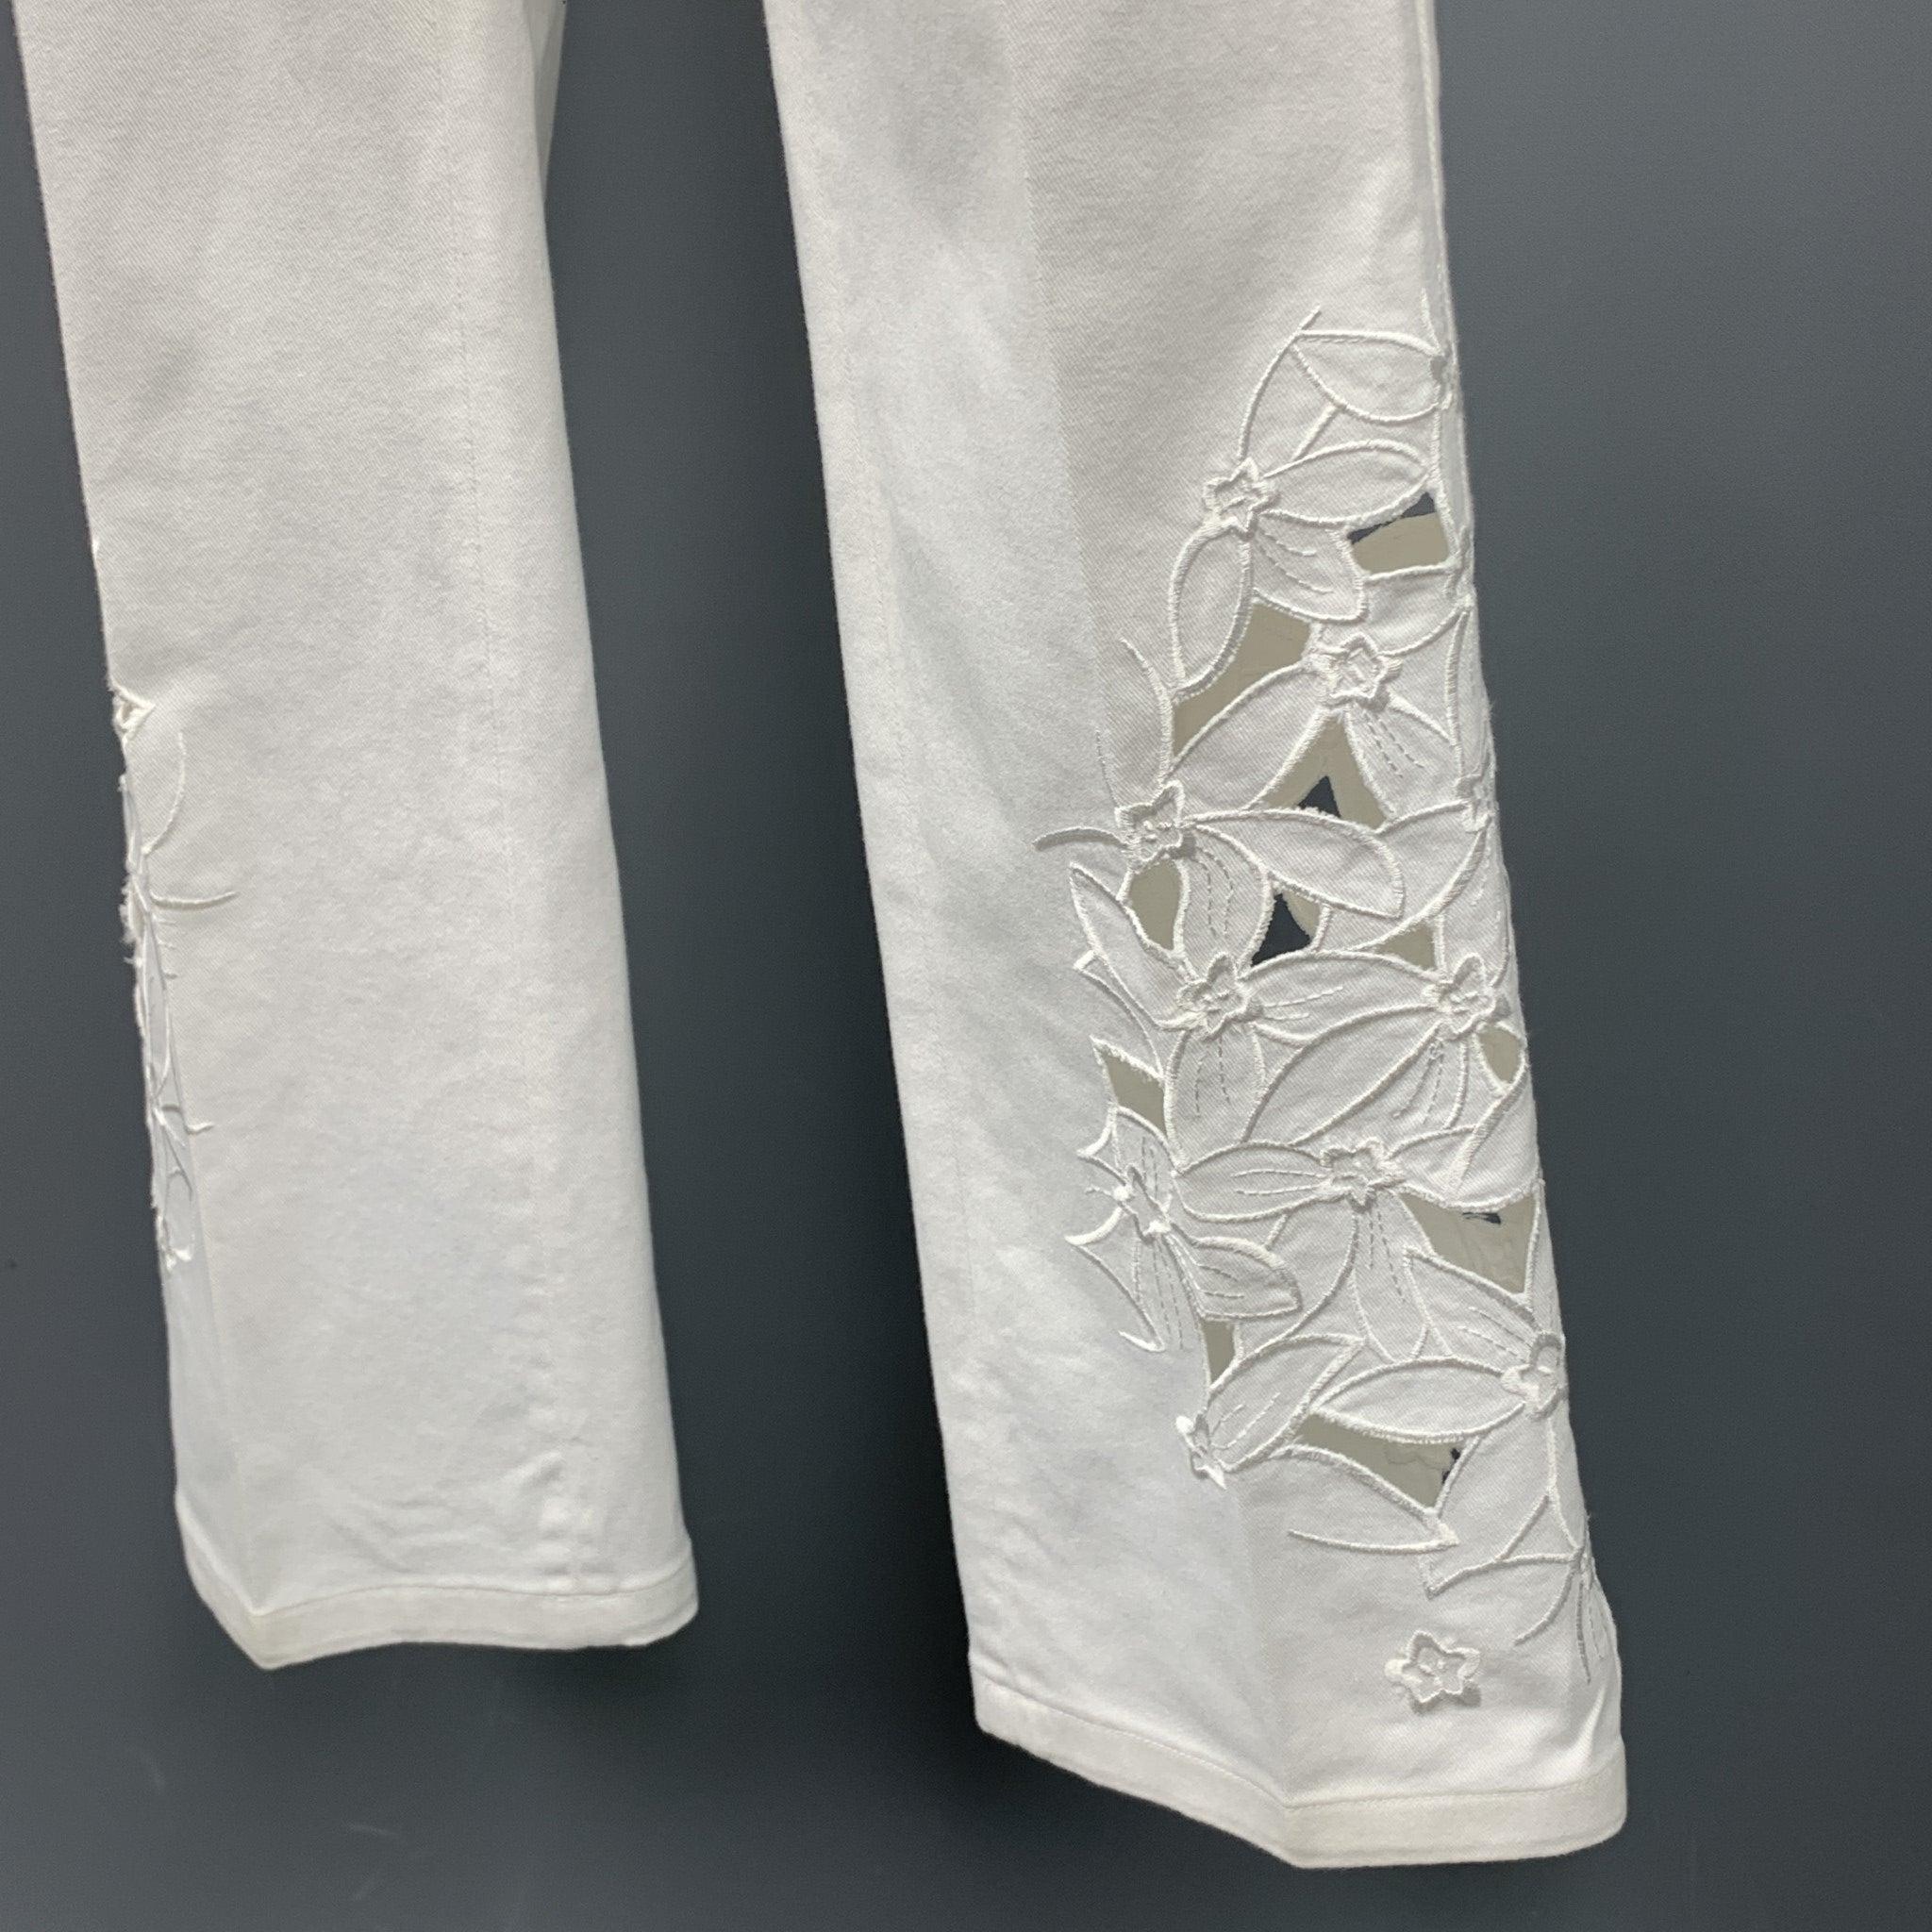 BLUMARINE Jeans aus weißem Denim mit gesticktem Cut-Out-Design, geradem Bein und Reißverschluss.
Sehr gut
Gebrauchtes Zustand. 

Markiert:   40 

Abmessungen: 
  Taille: 30 Zoll 
Steigung: 7 Zoll 
Innennaht: 30 Zoll 
  
  
 
Referenz: